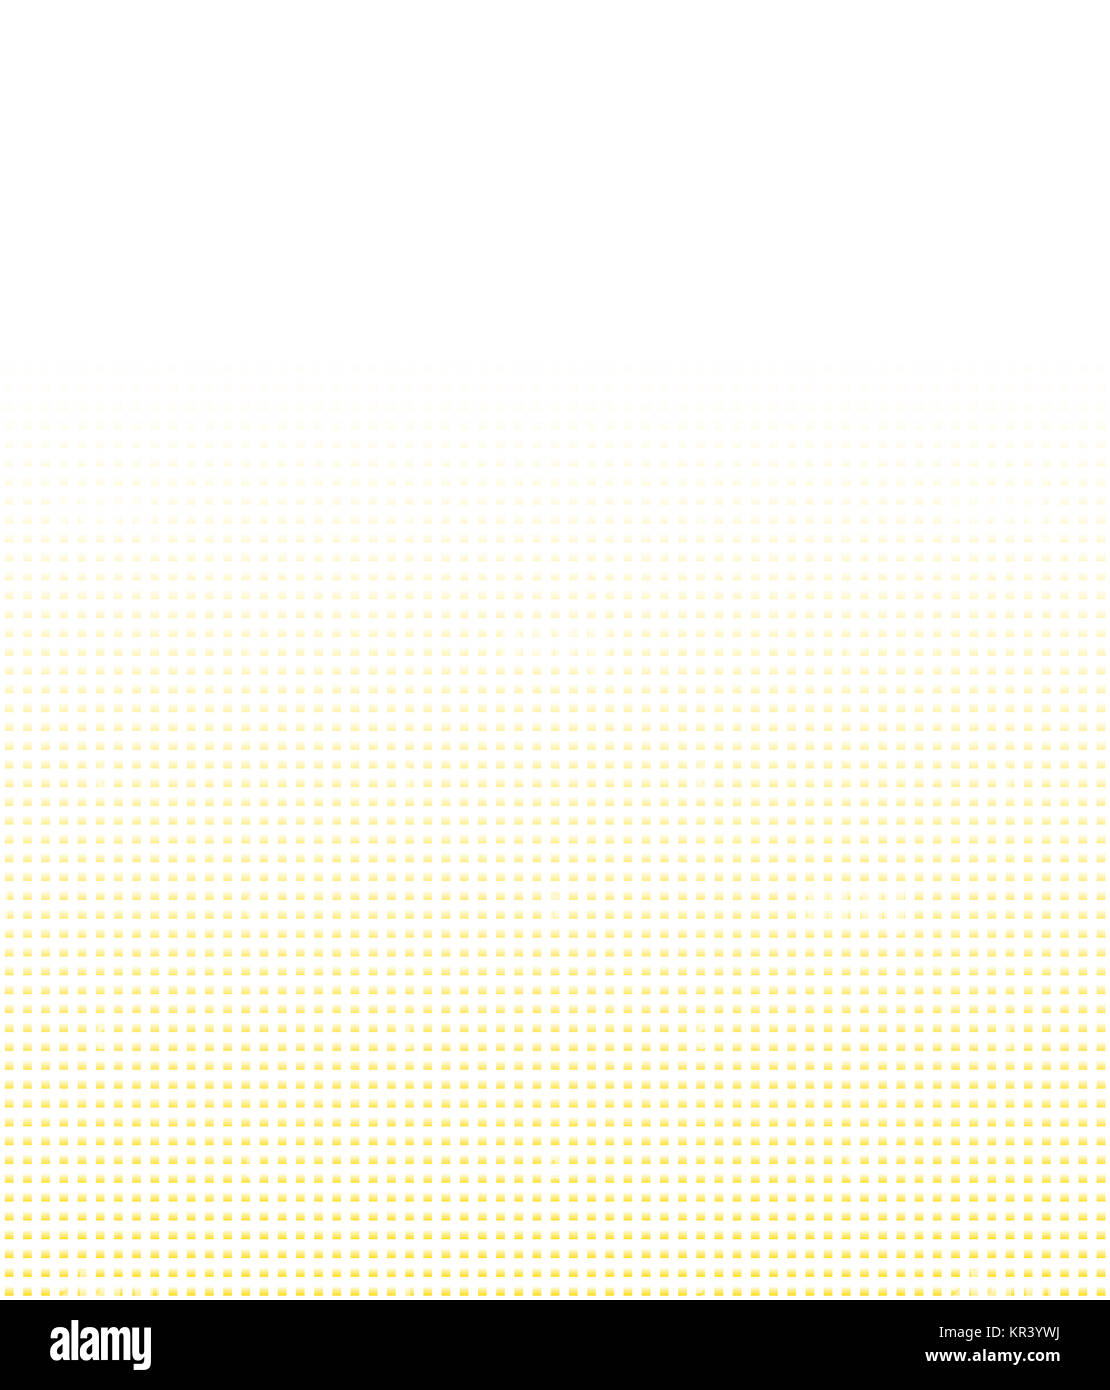 Hintergrund mit Farbverlauf aus kleinen Pixeln in weiß und orange Stock Photo